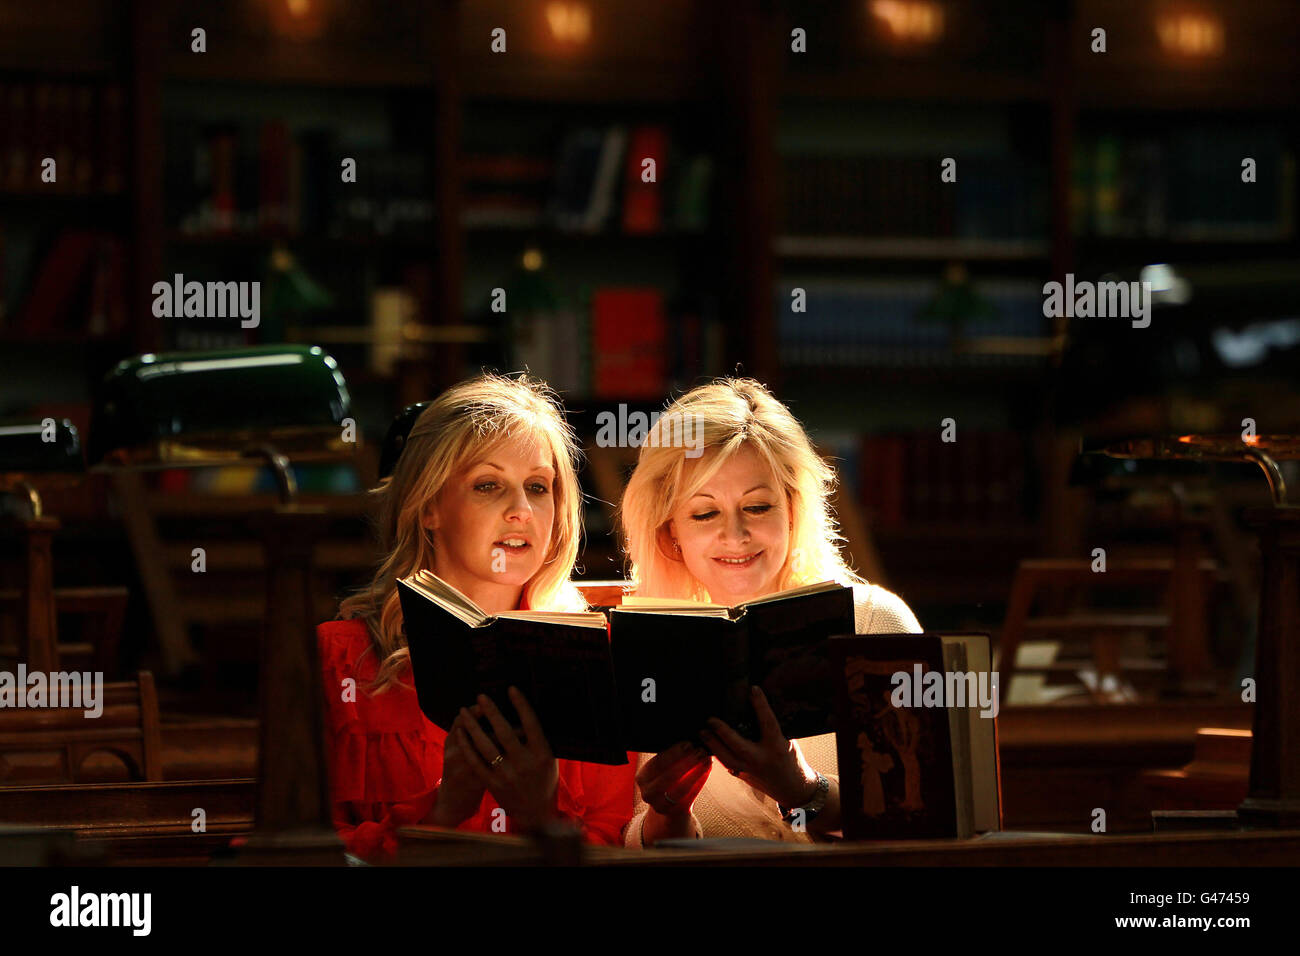 (Sinistra - destra) gli autori Sinead Moriarty e Kathy Kelly leggono i più venduti del 18 ° e 19 ° secolo alla Biblioteca Nazionale d'Irlanda durante una fotocall a una serie di interviste pubbliche gratuite sulla fiction popolare presso la sede. Foto Stock